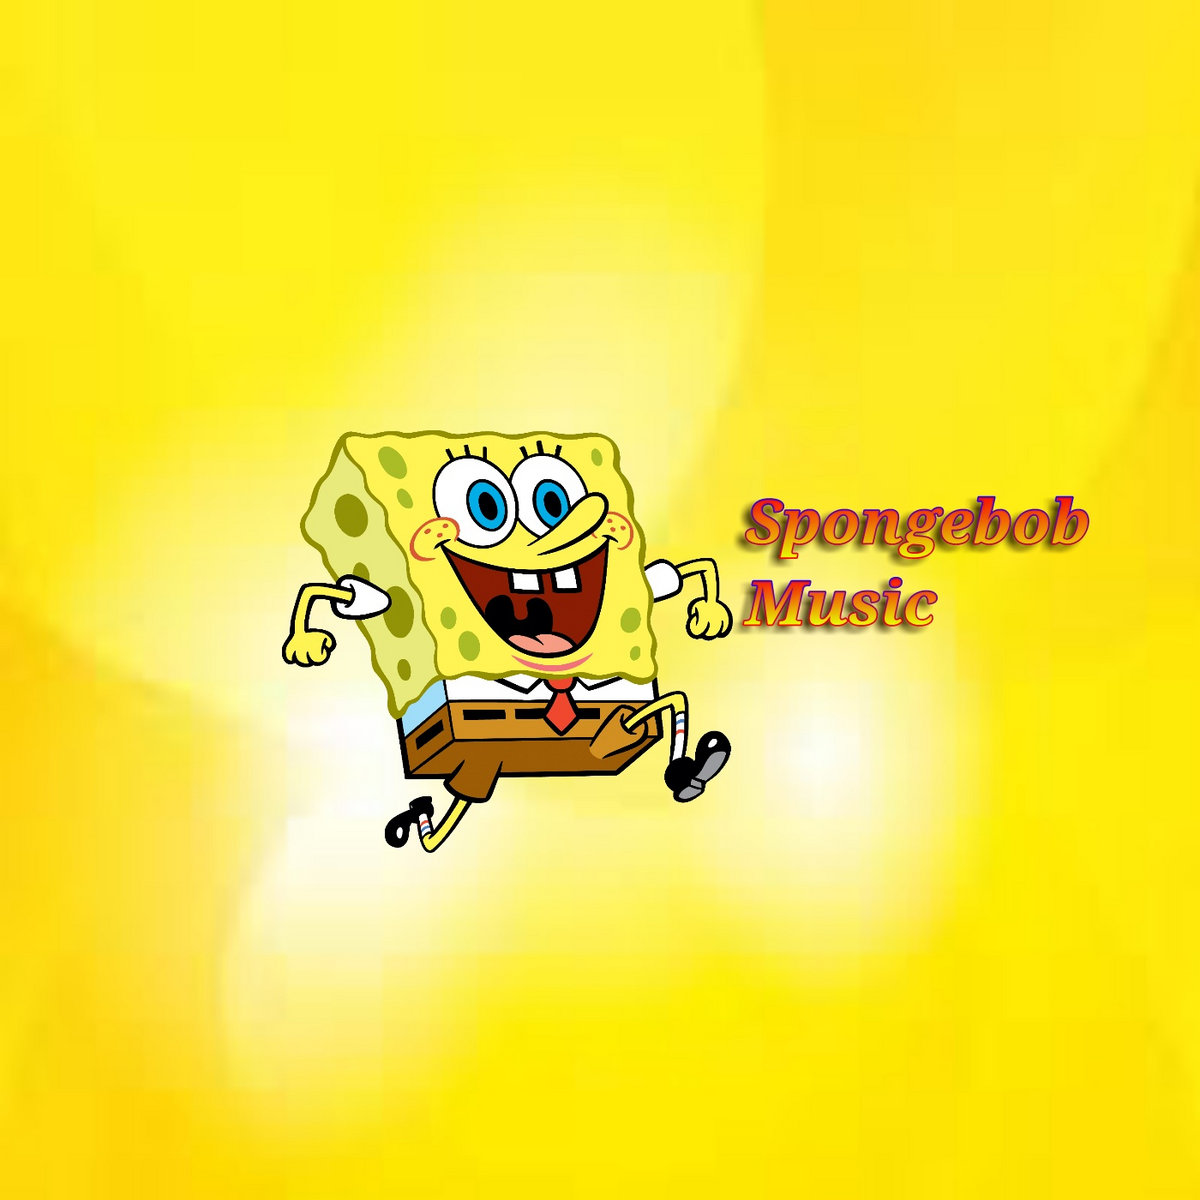 Spongebob theme. Spongebob Theme Song. Spongebob Soundtrack Woe is me.